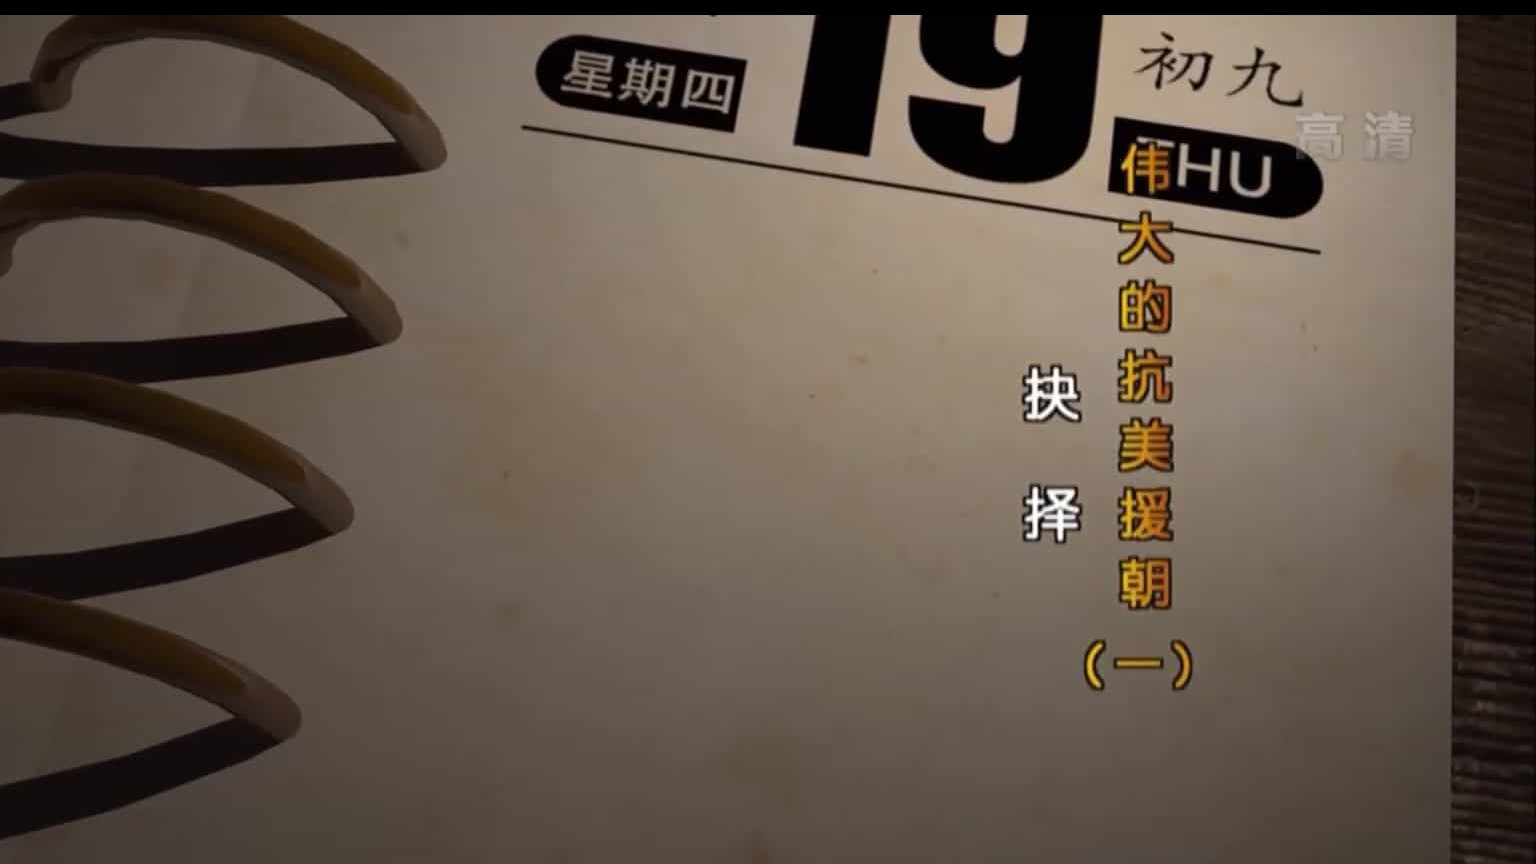 央视纪录片《伟大的抗美援朝》全5集 汉语中字 纪录片